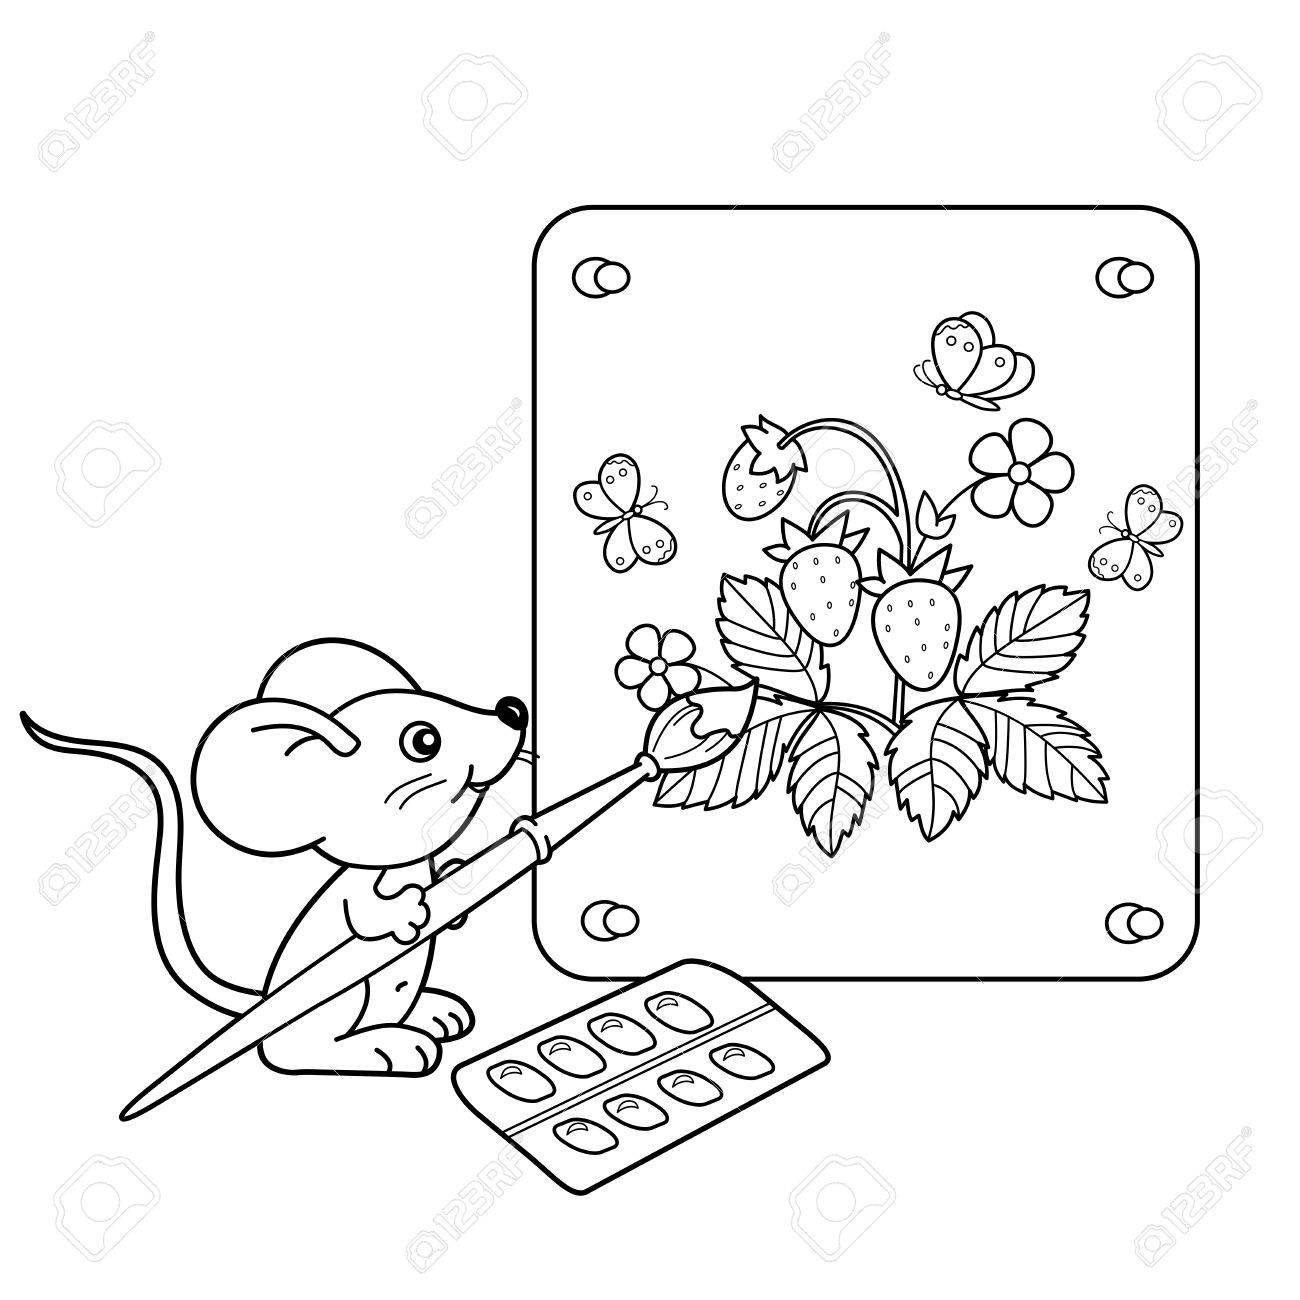 Мышка с книжкой раскраска